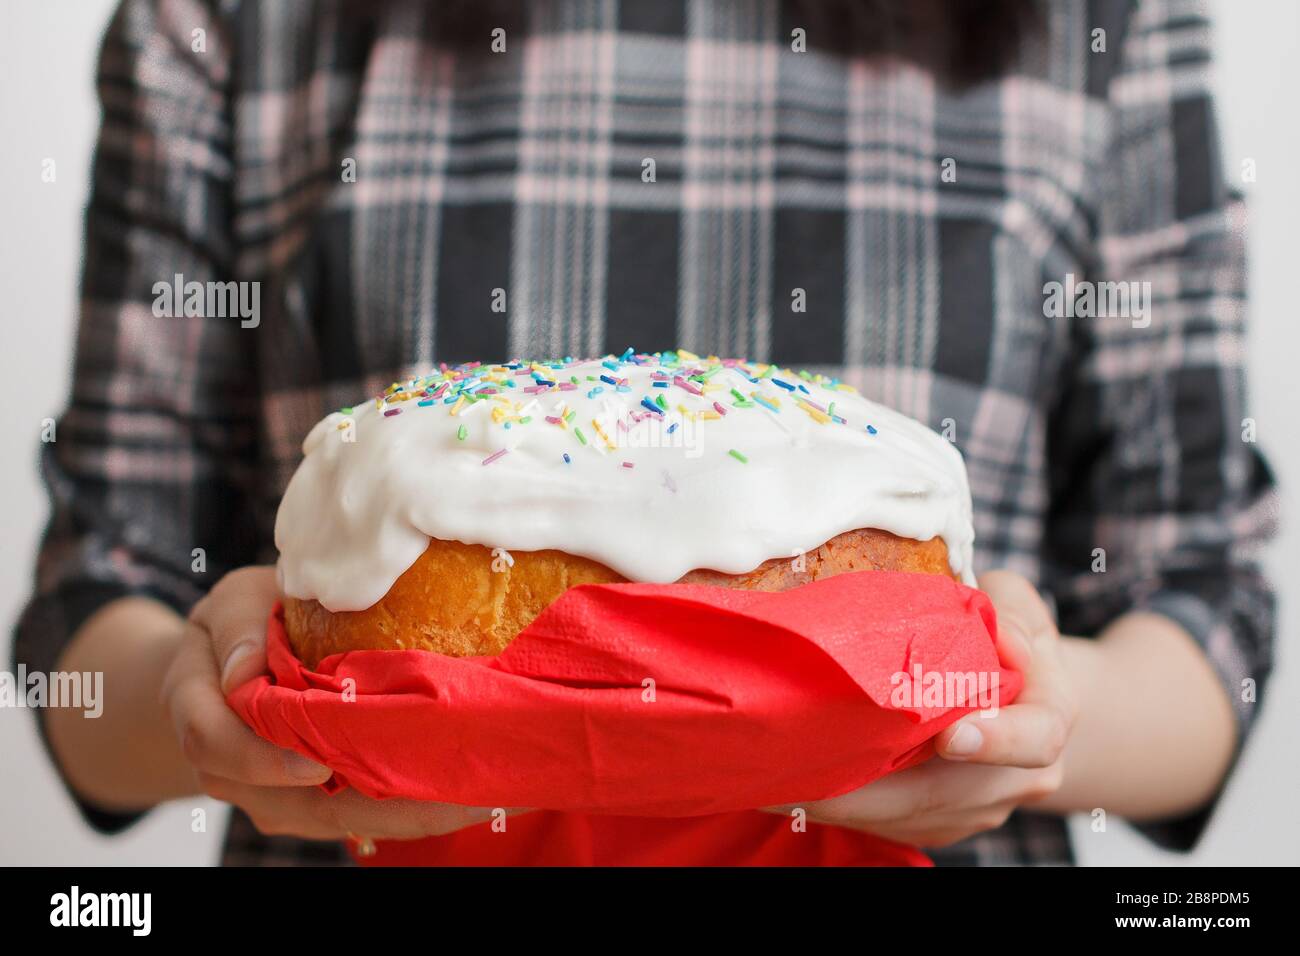 Tradizionale torta di Pasqua in mani femminili. Pane di Pasqua con crema bianca e decorazione colorata sulla parte superiore. Concetto di menu. Foto Stock